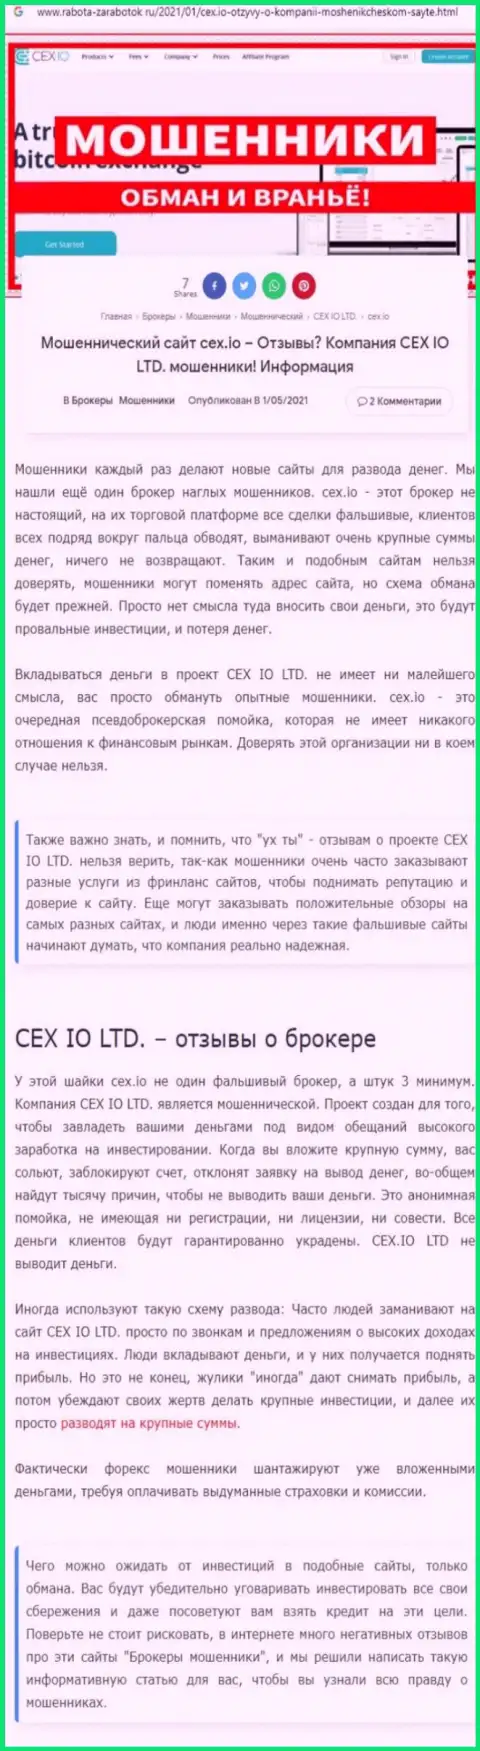 CEX.IO Limited: обзор неправомерно действующей организации и мнения, утративших средства реальных клиентов